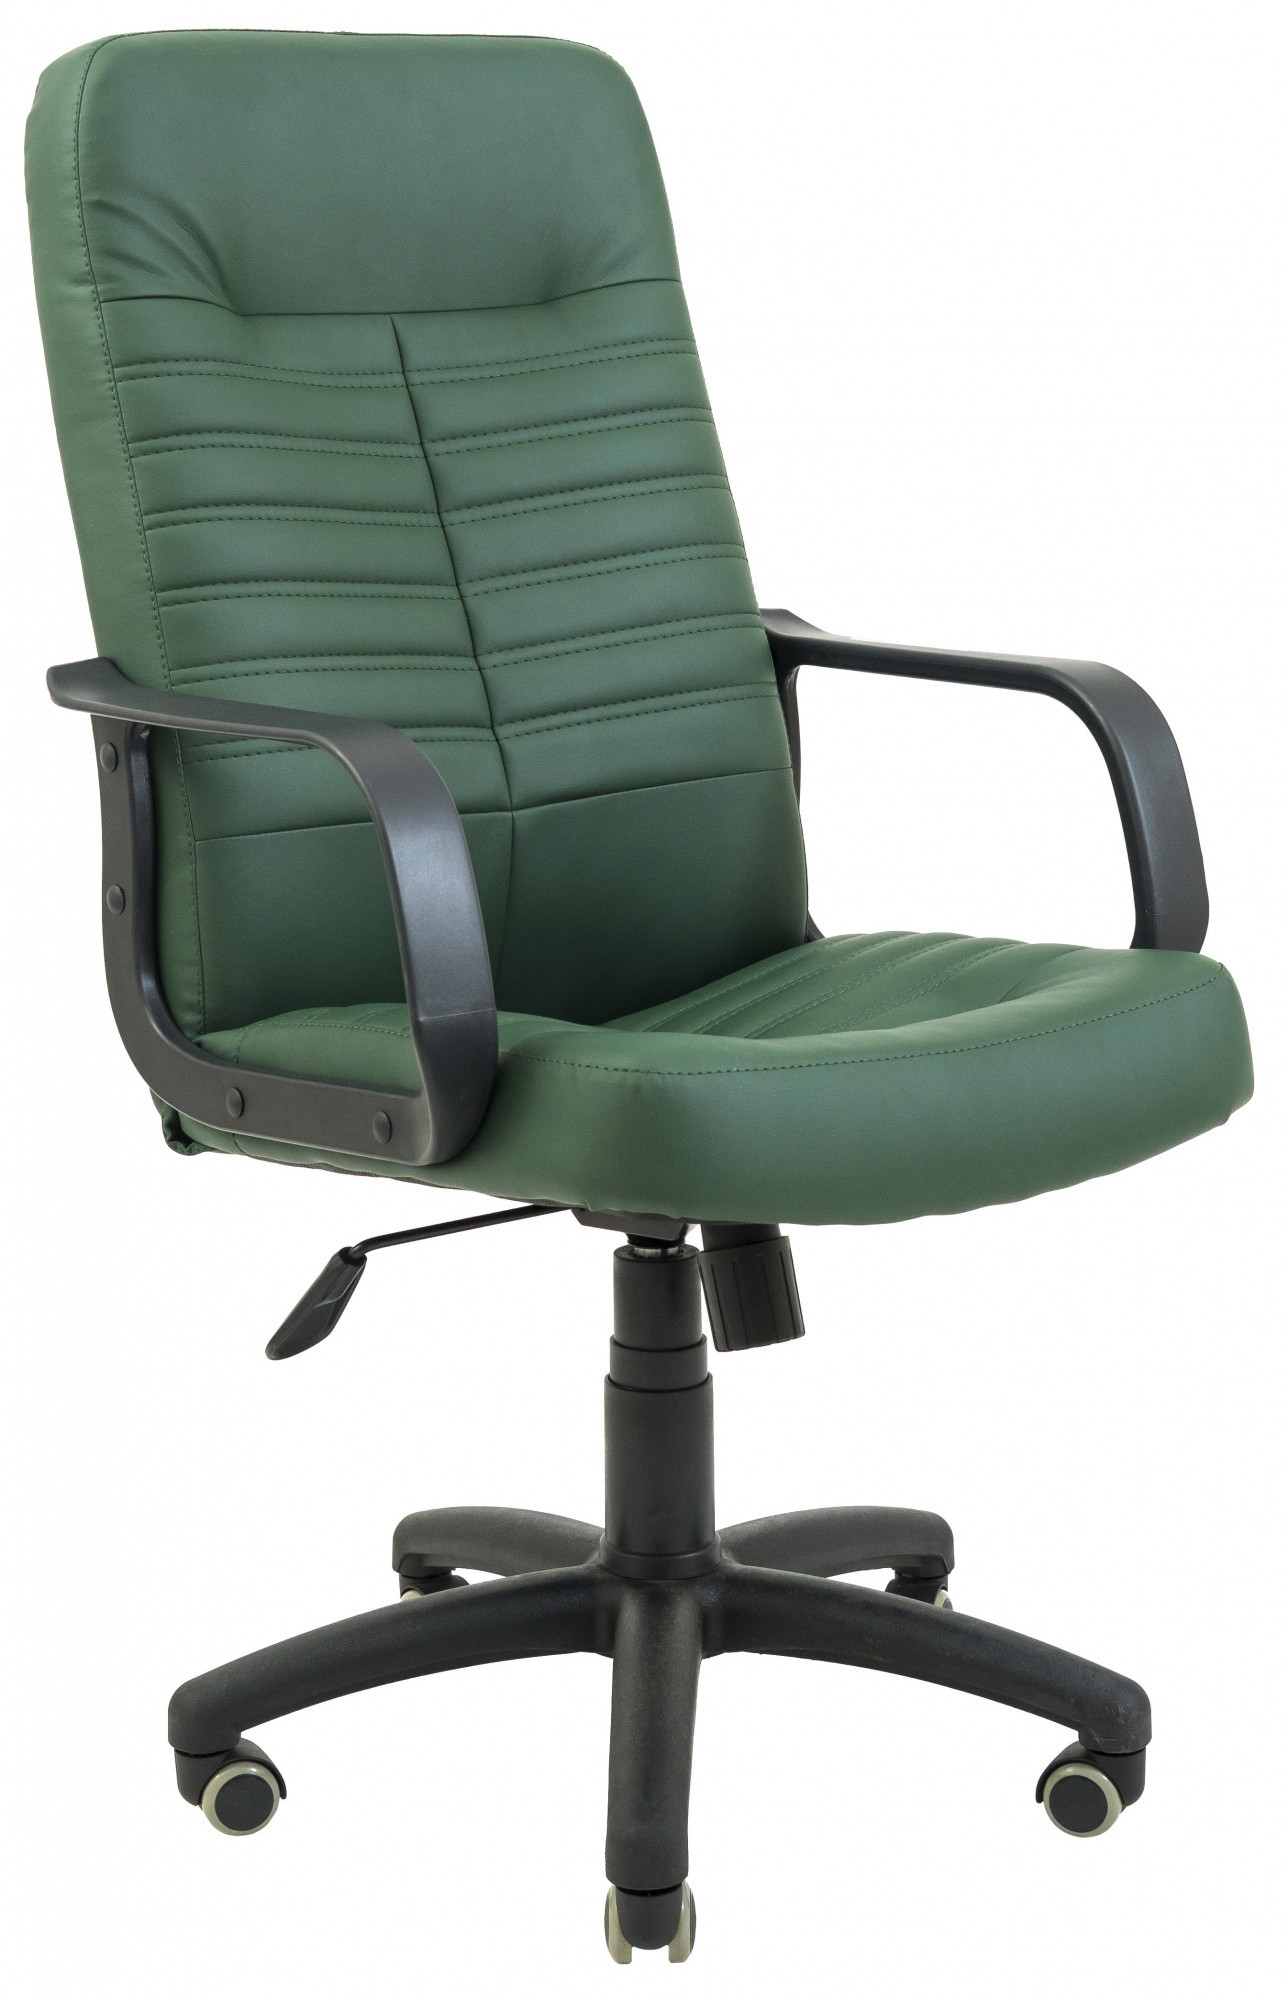 Офисное Кресло Руководителя Richman Вегас Флай 2226 Пластик М1 Tilt Зеленое